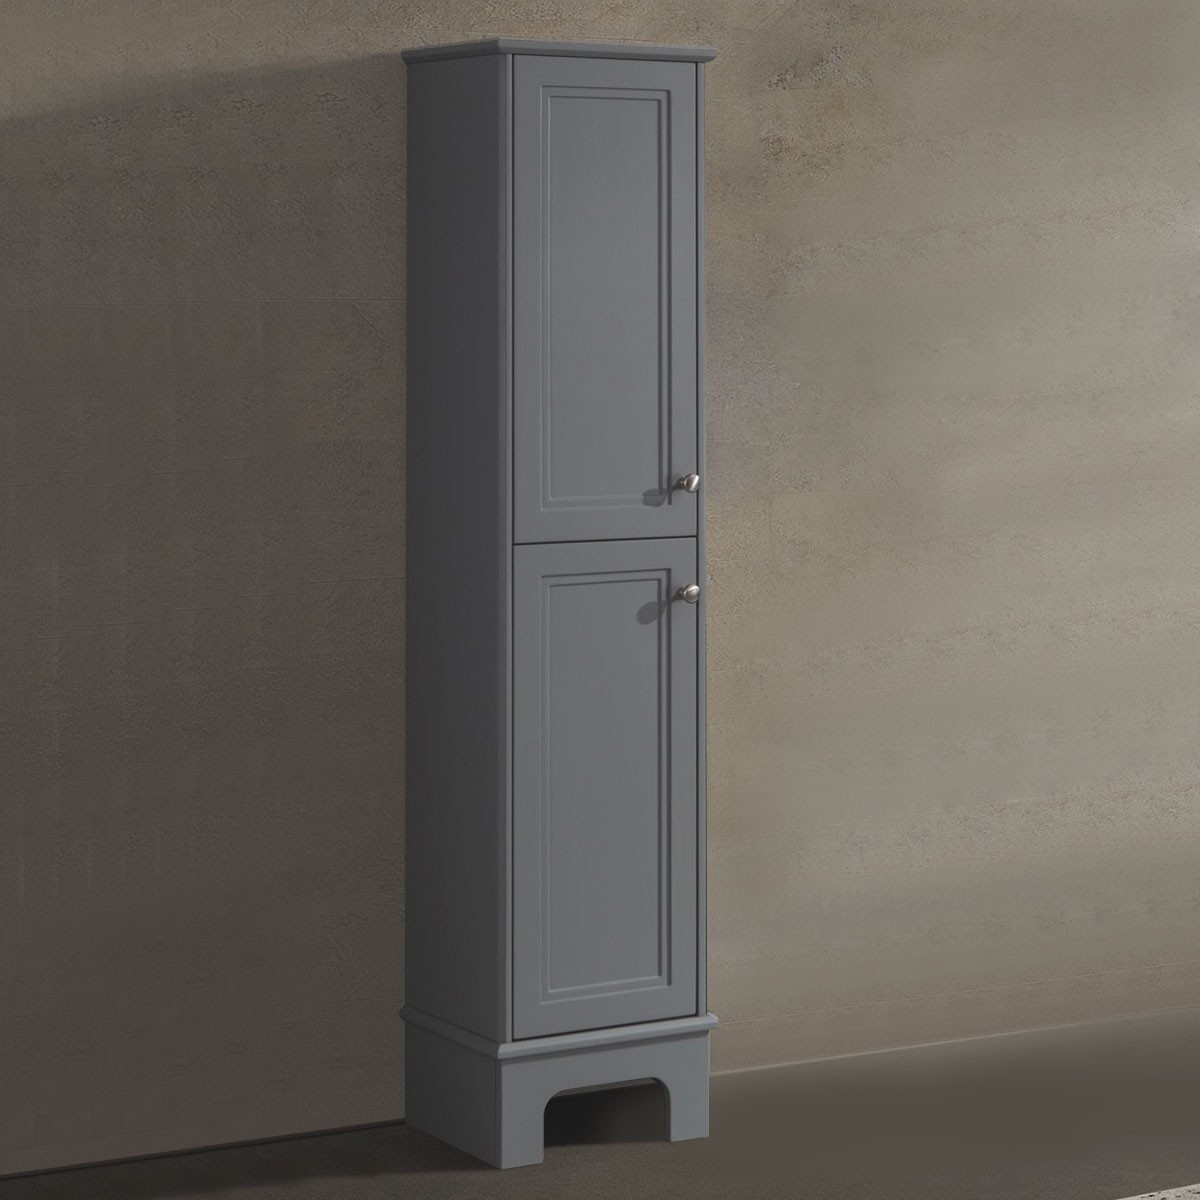 14 x 64 In. Freestanding Bathroom Linen Cabinet (BR8002-S)